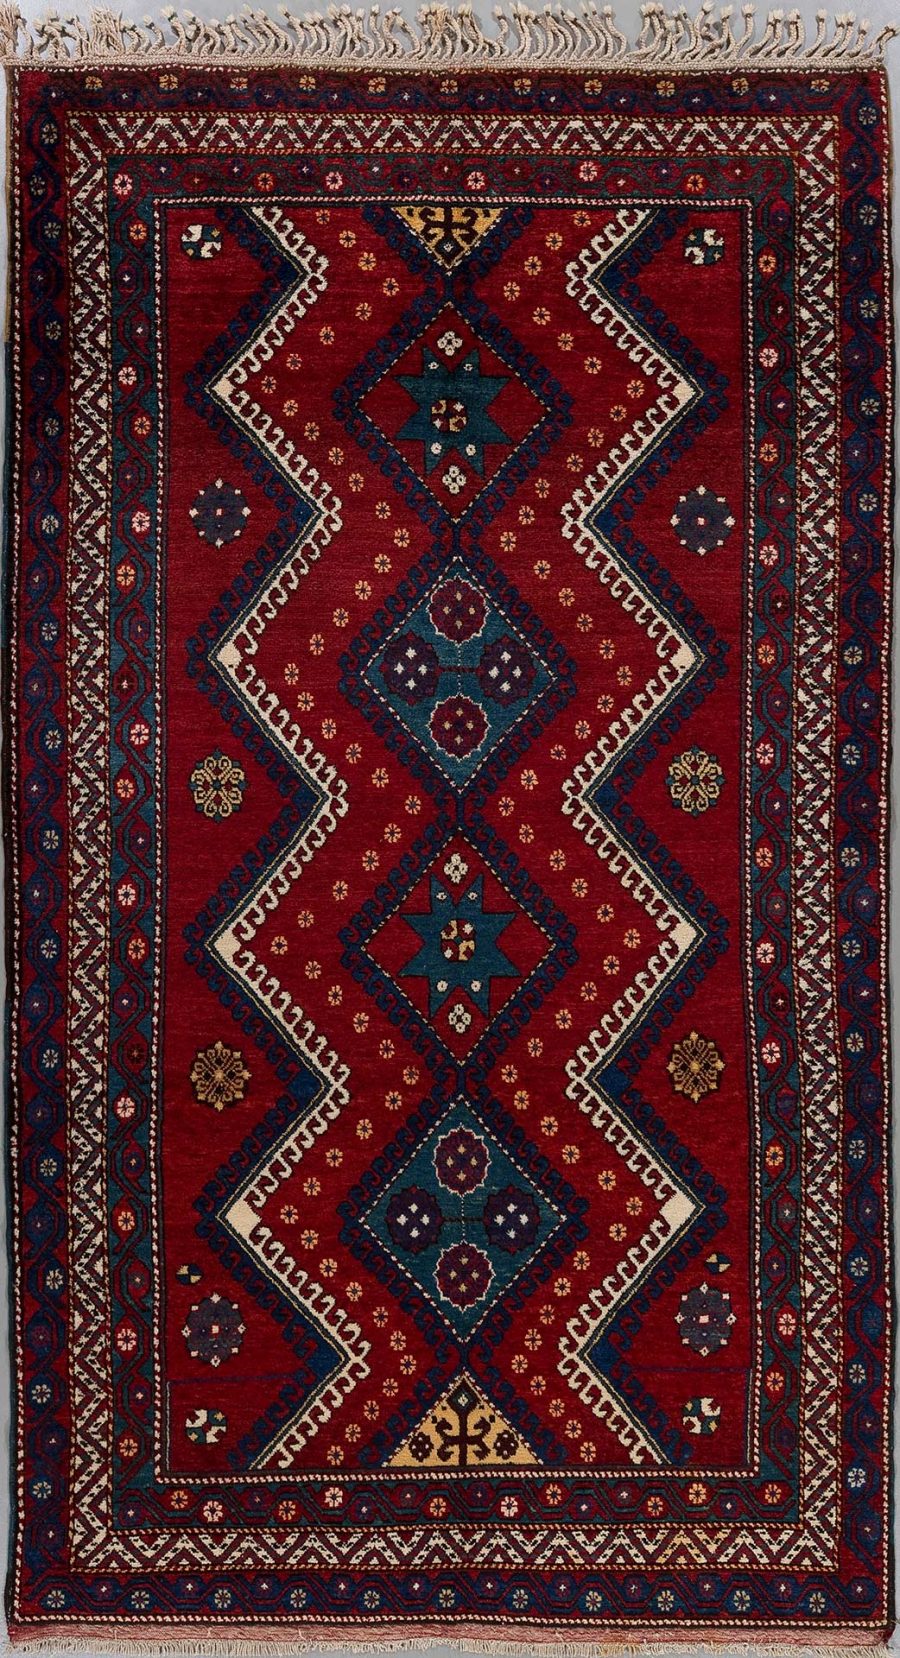 Traditioneller handgeknüpfter Teppich mit einem komplexen Muster aus geometrischen Formen und Bordüren in Rot-, Blau- und Beigetönen.